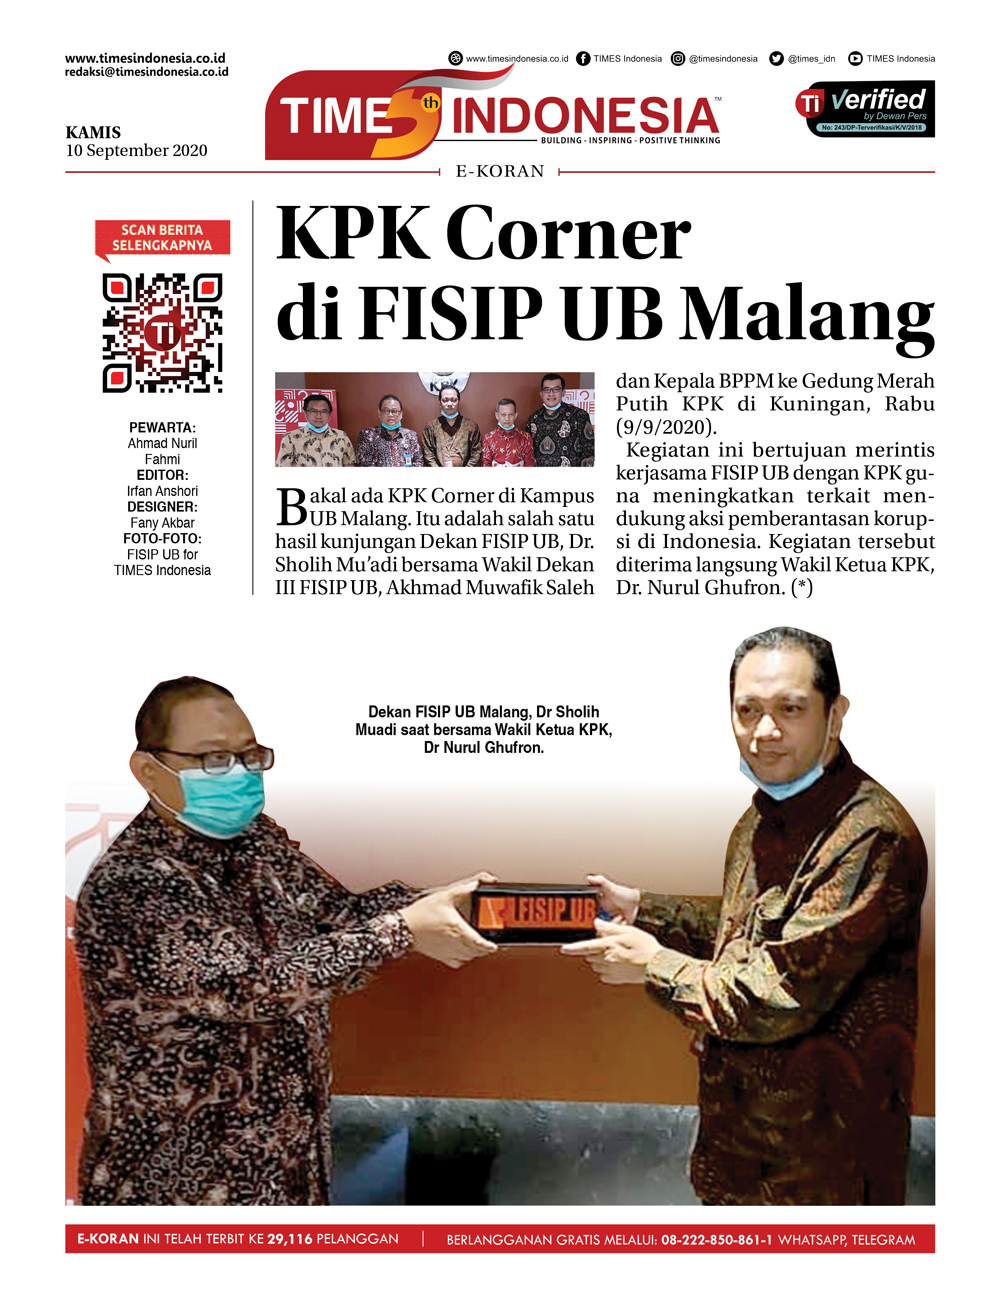 Edisi-Kamis-10-September-2020-KPK-Corner-di-fisib-ub-malang.jpg